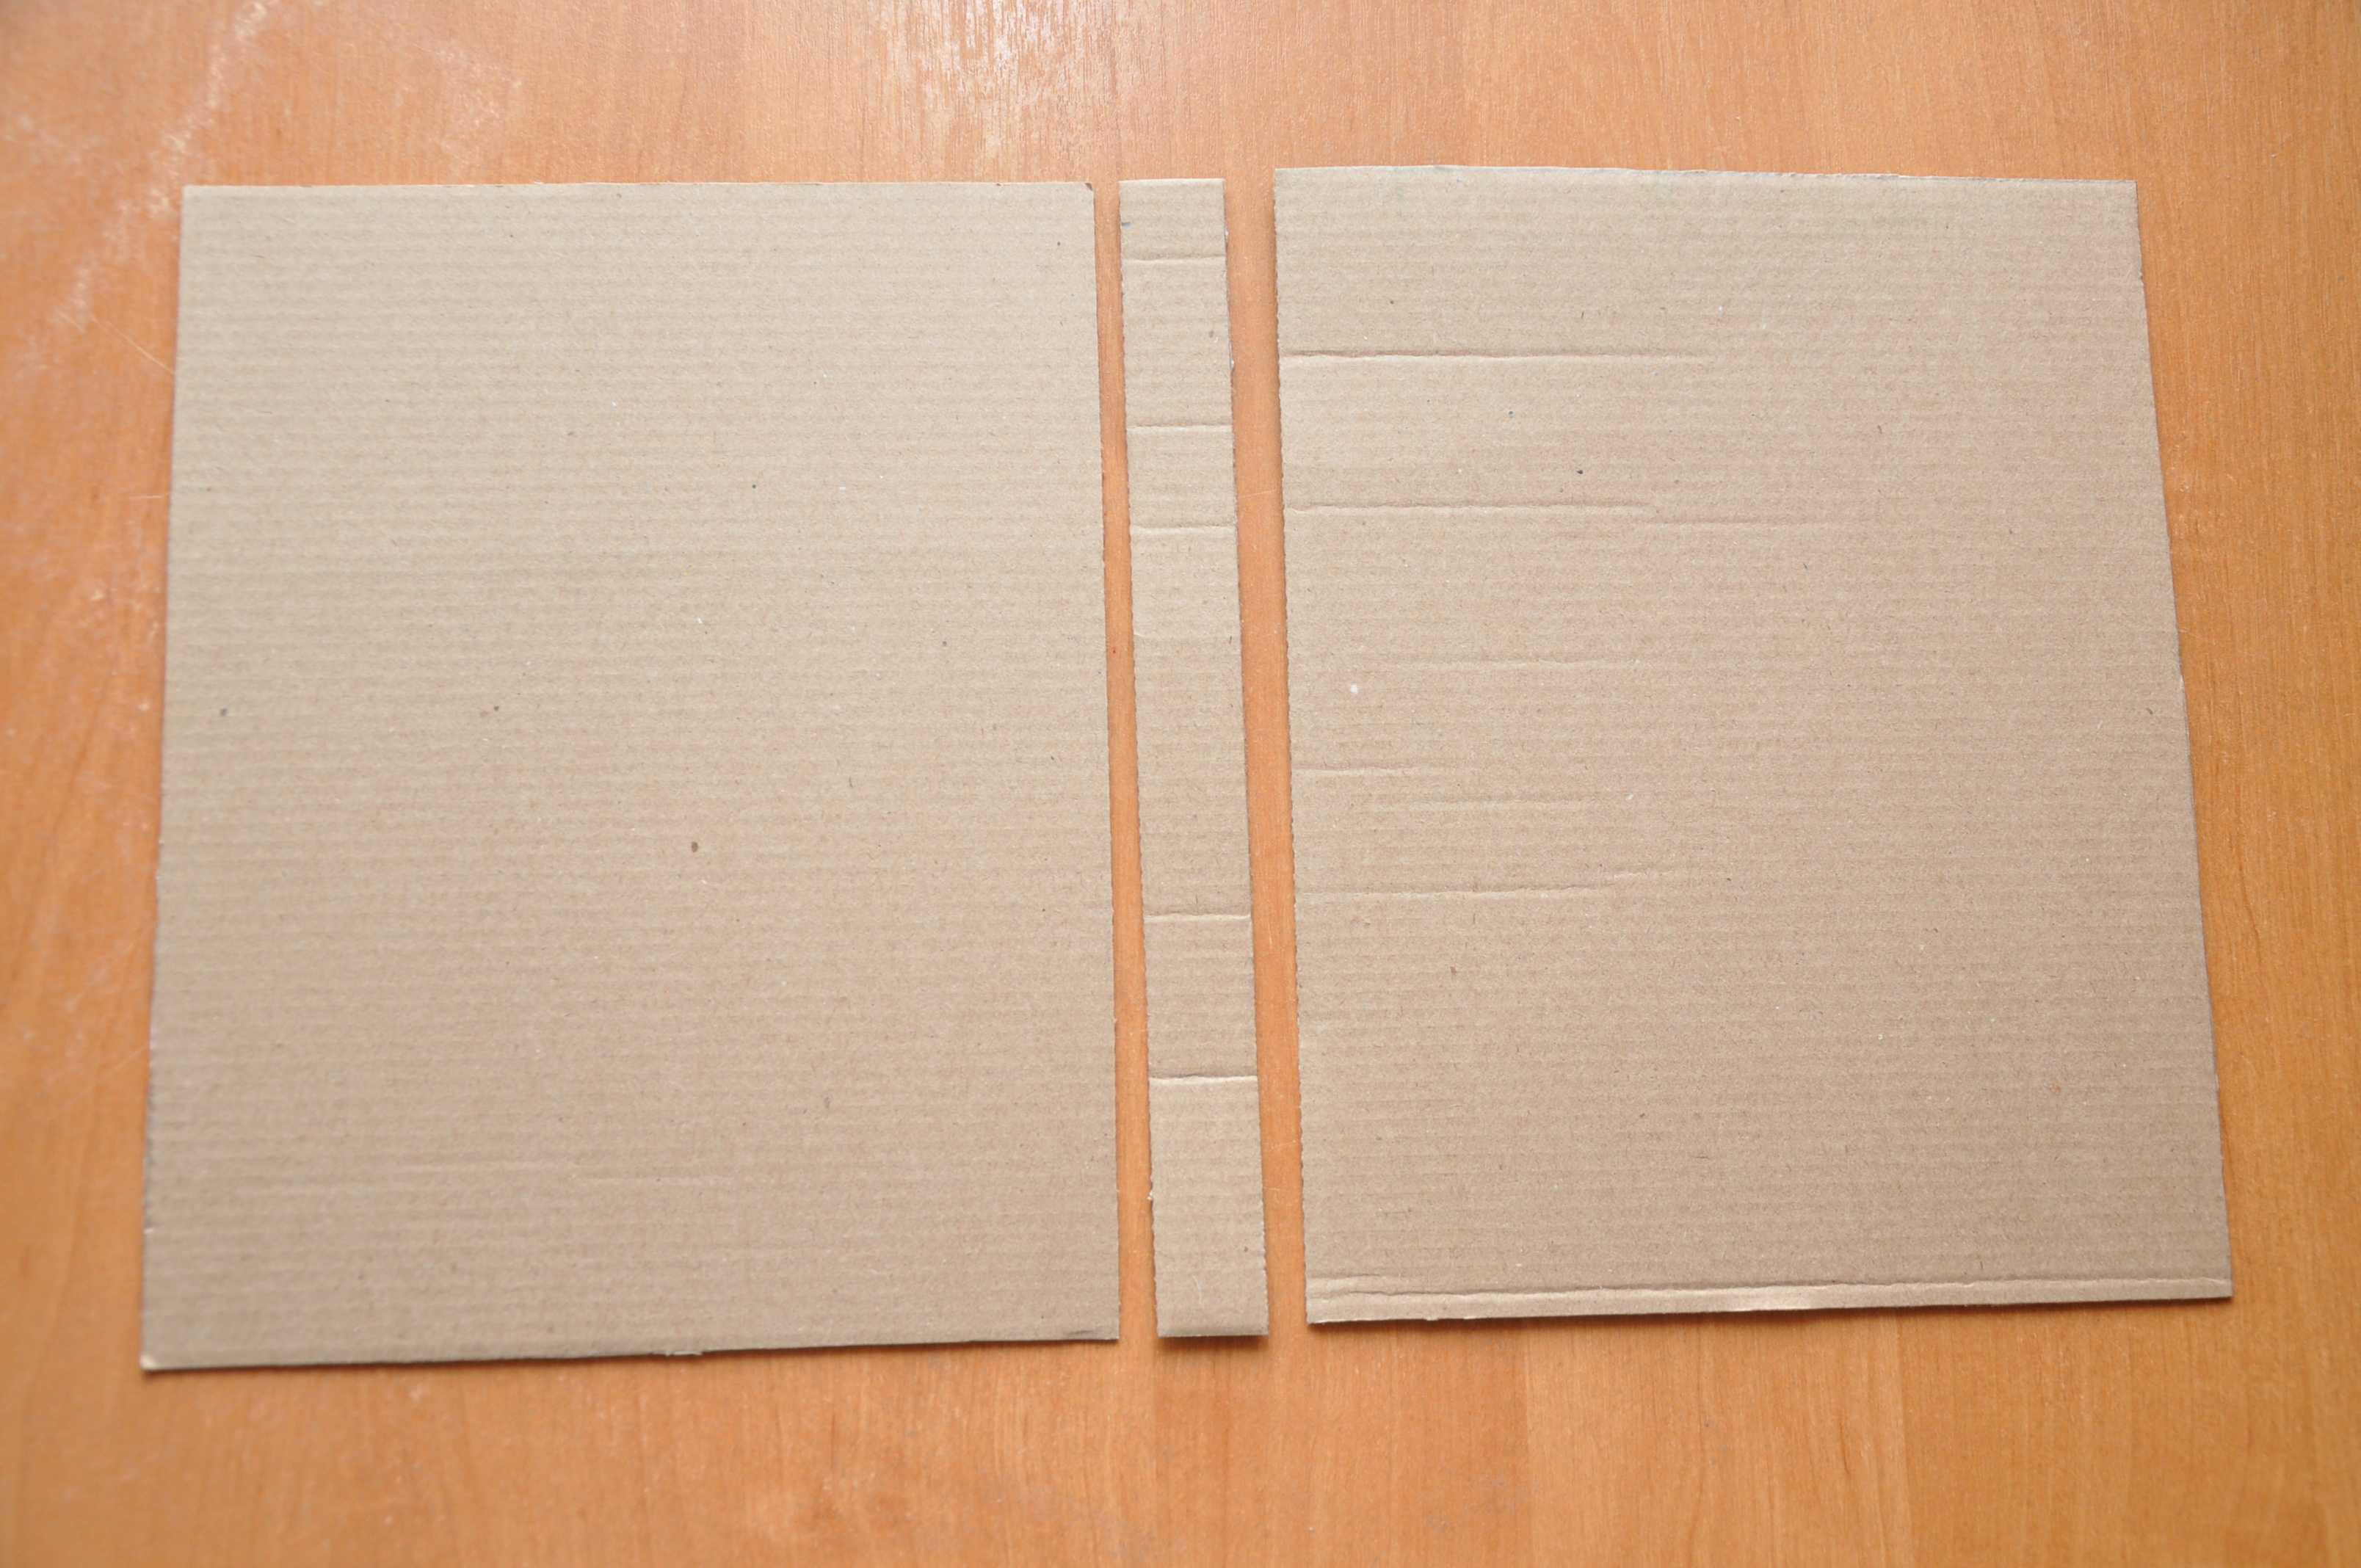 Как сделать блокнот своими руками из бумаги: способы без сшивания, со сшиванием